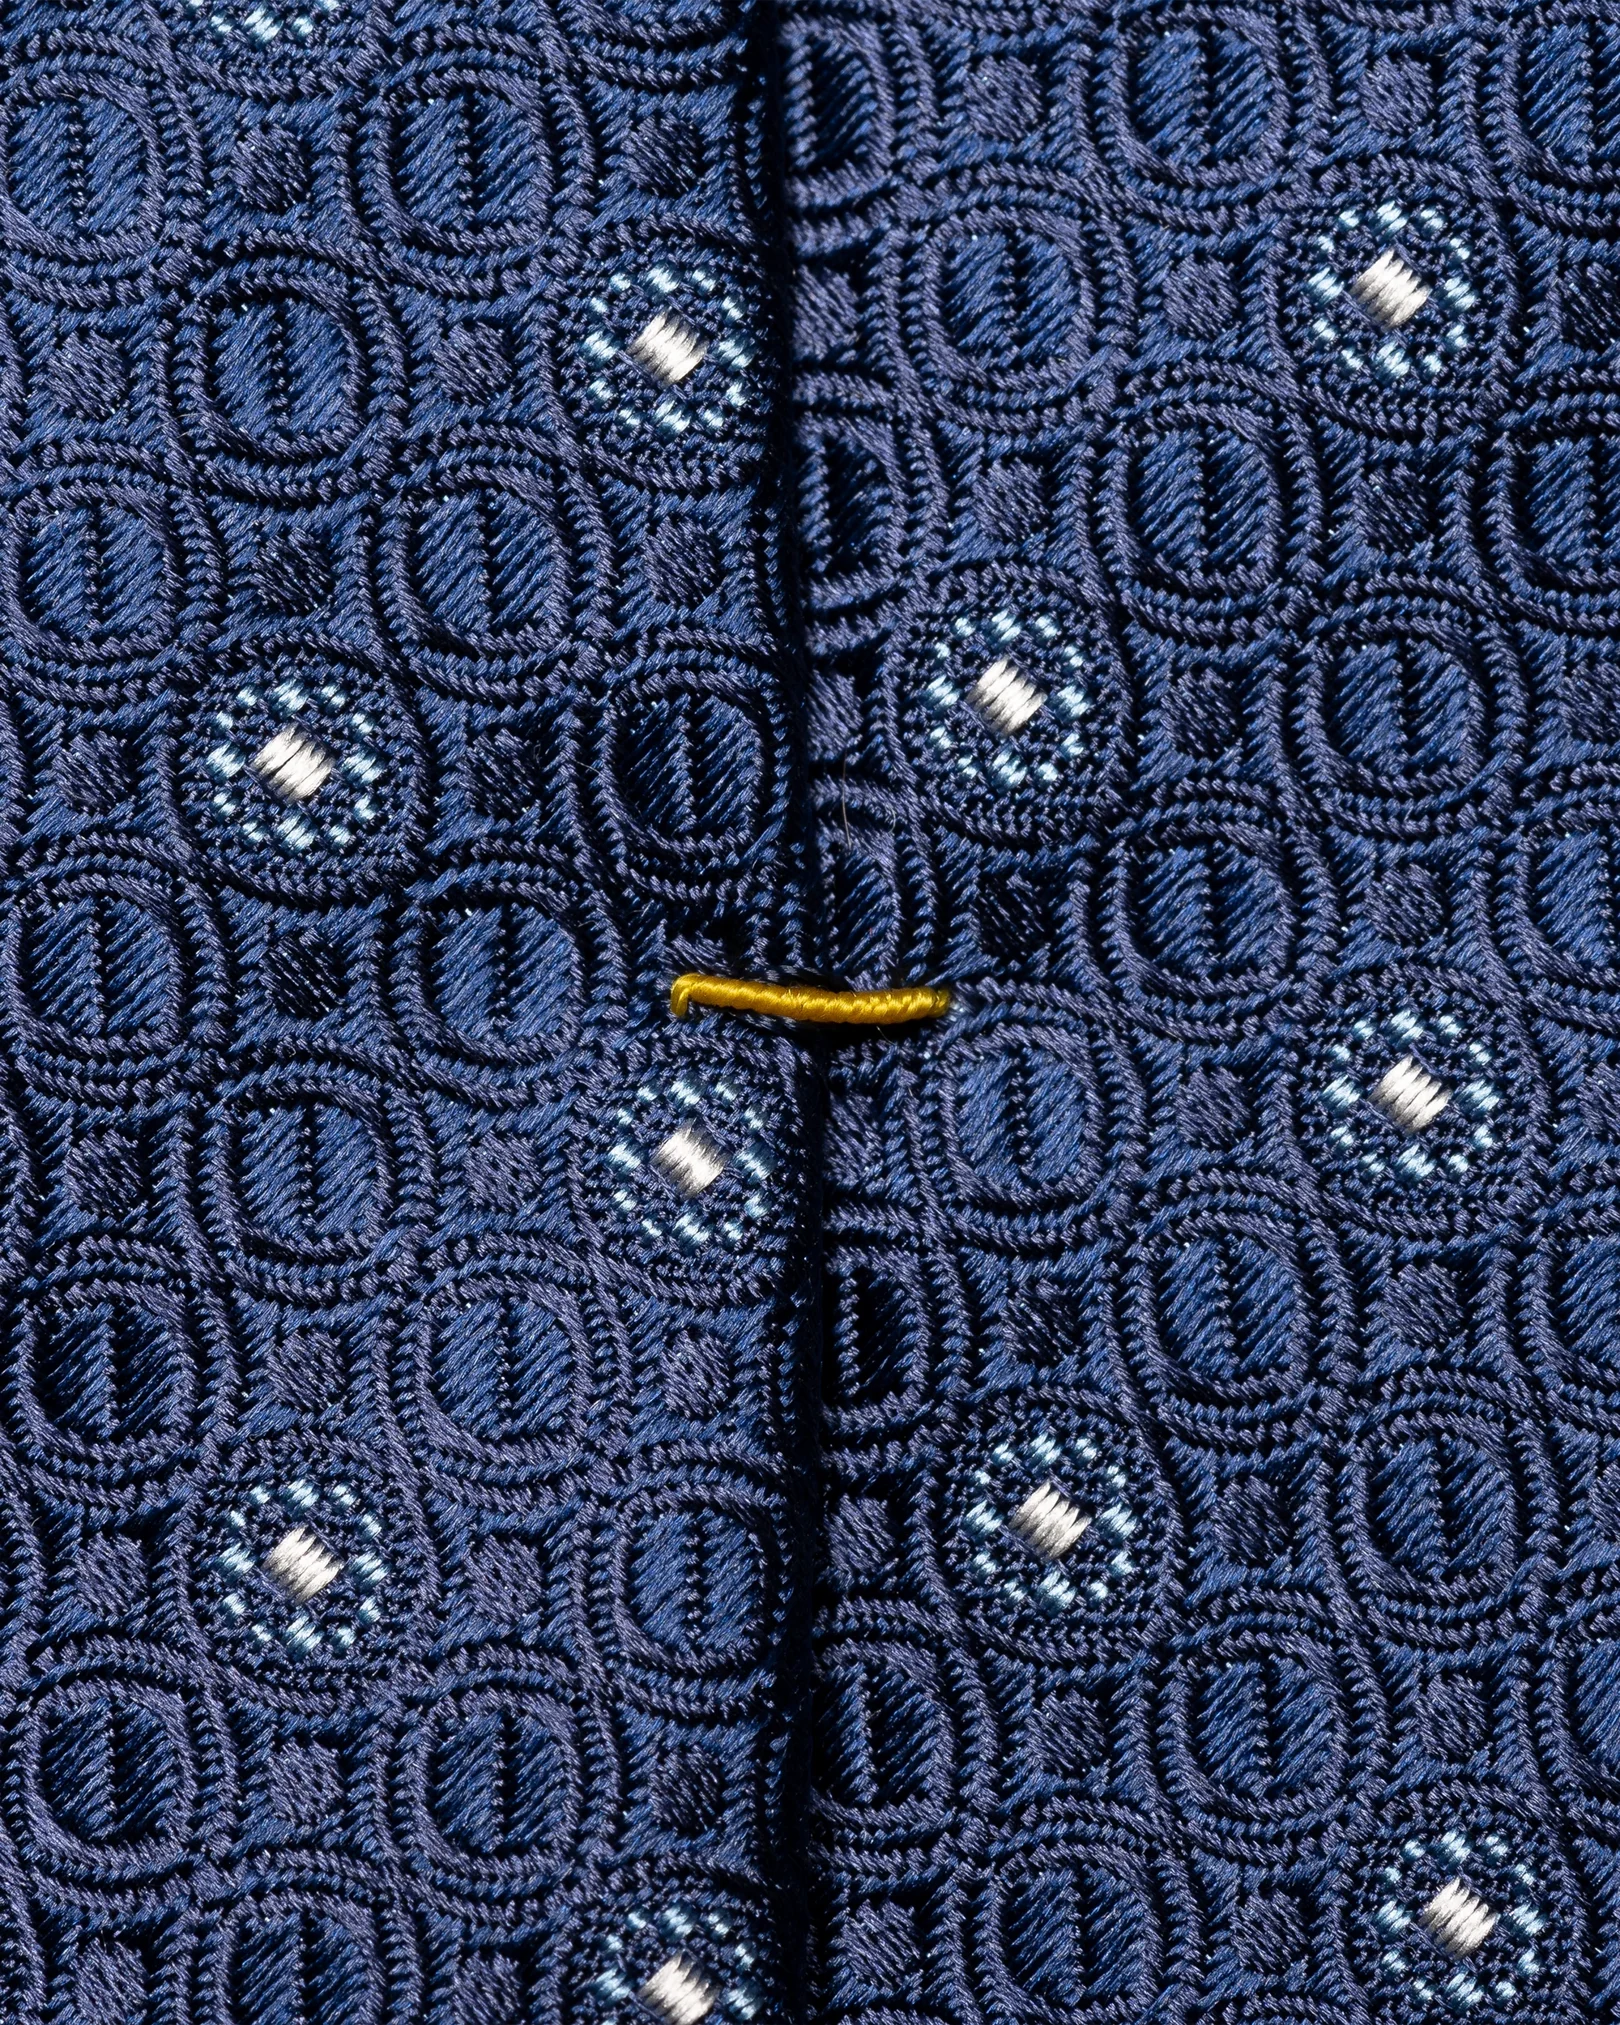 Eton - navy blue floral pattern tie